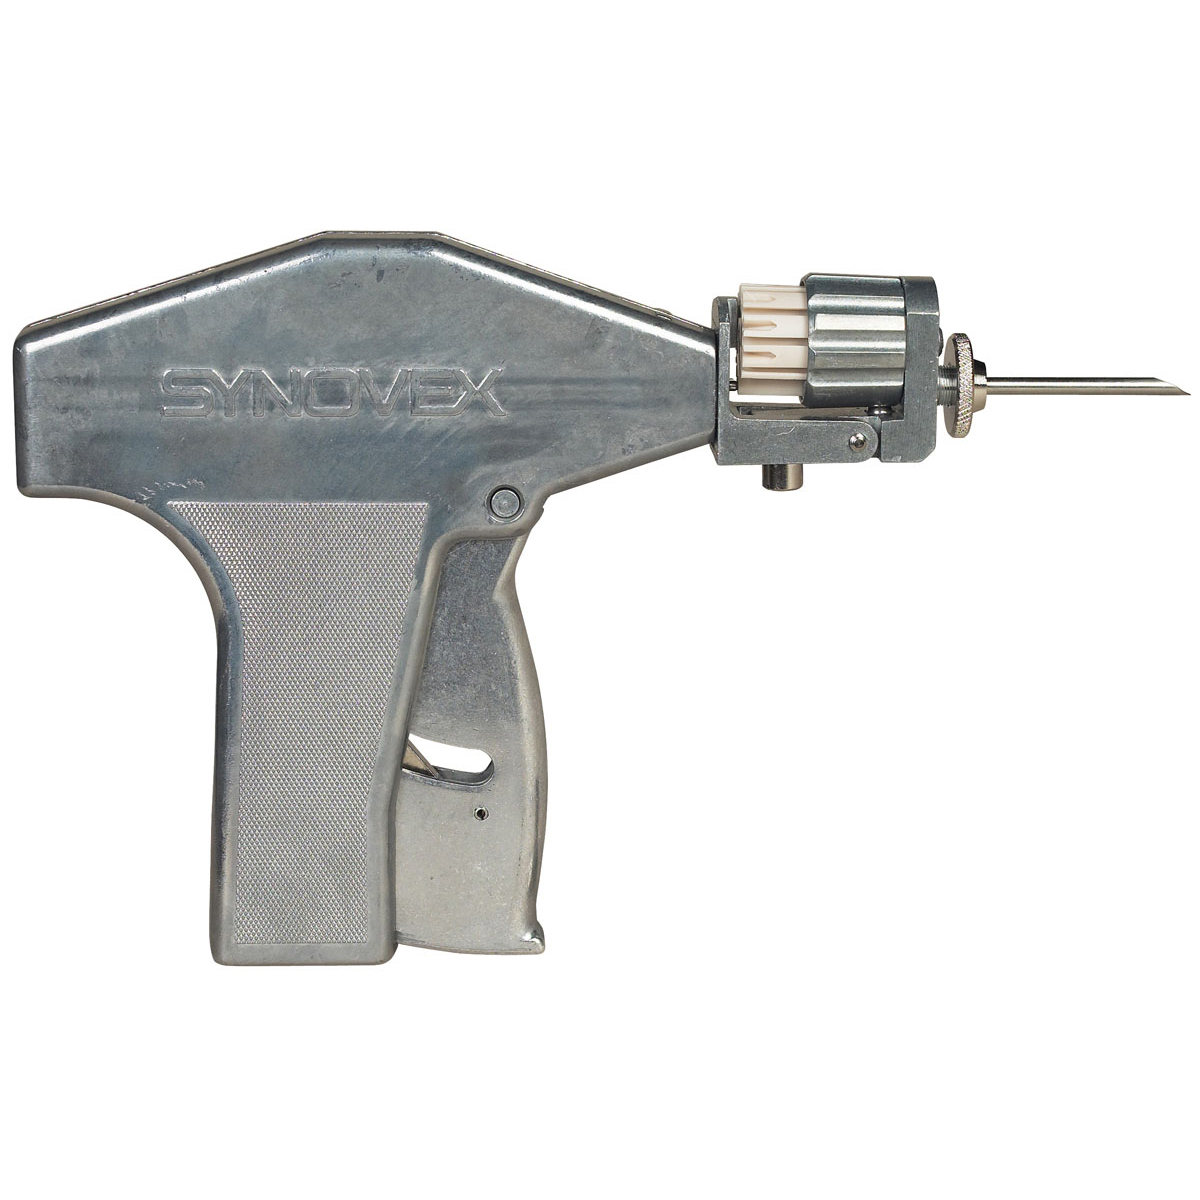 Synovex Implant Revolver Gun